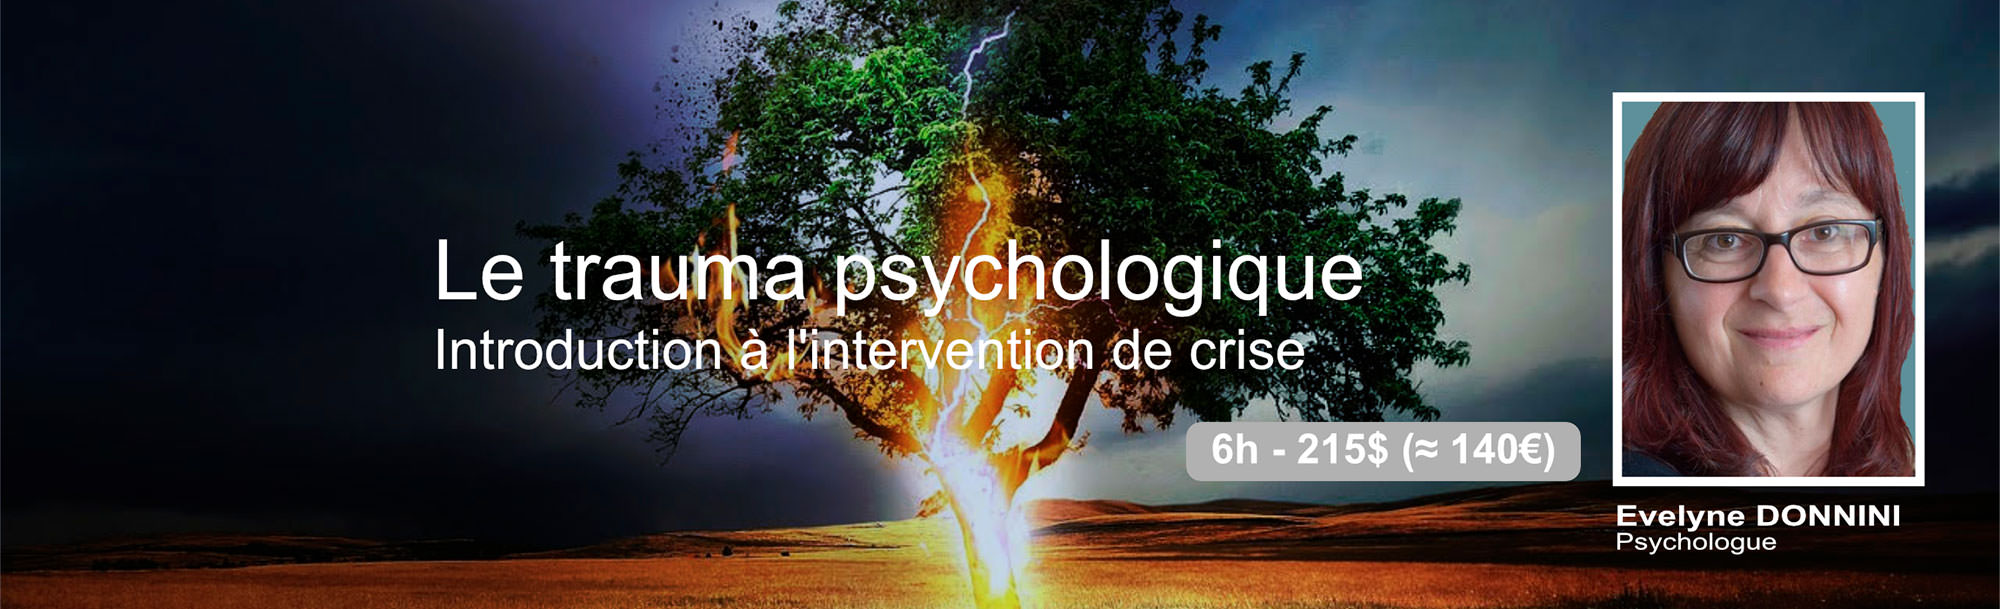 Formation en psychologie avec Evelyne DONNINI - Intervention de crise en contexte de traumatisme psychologique